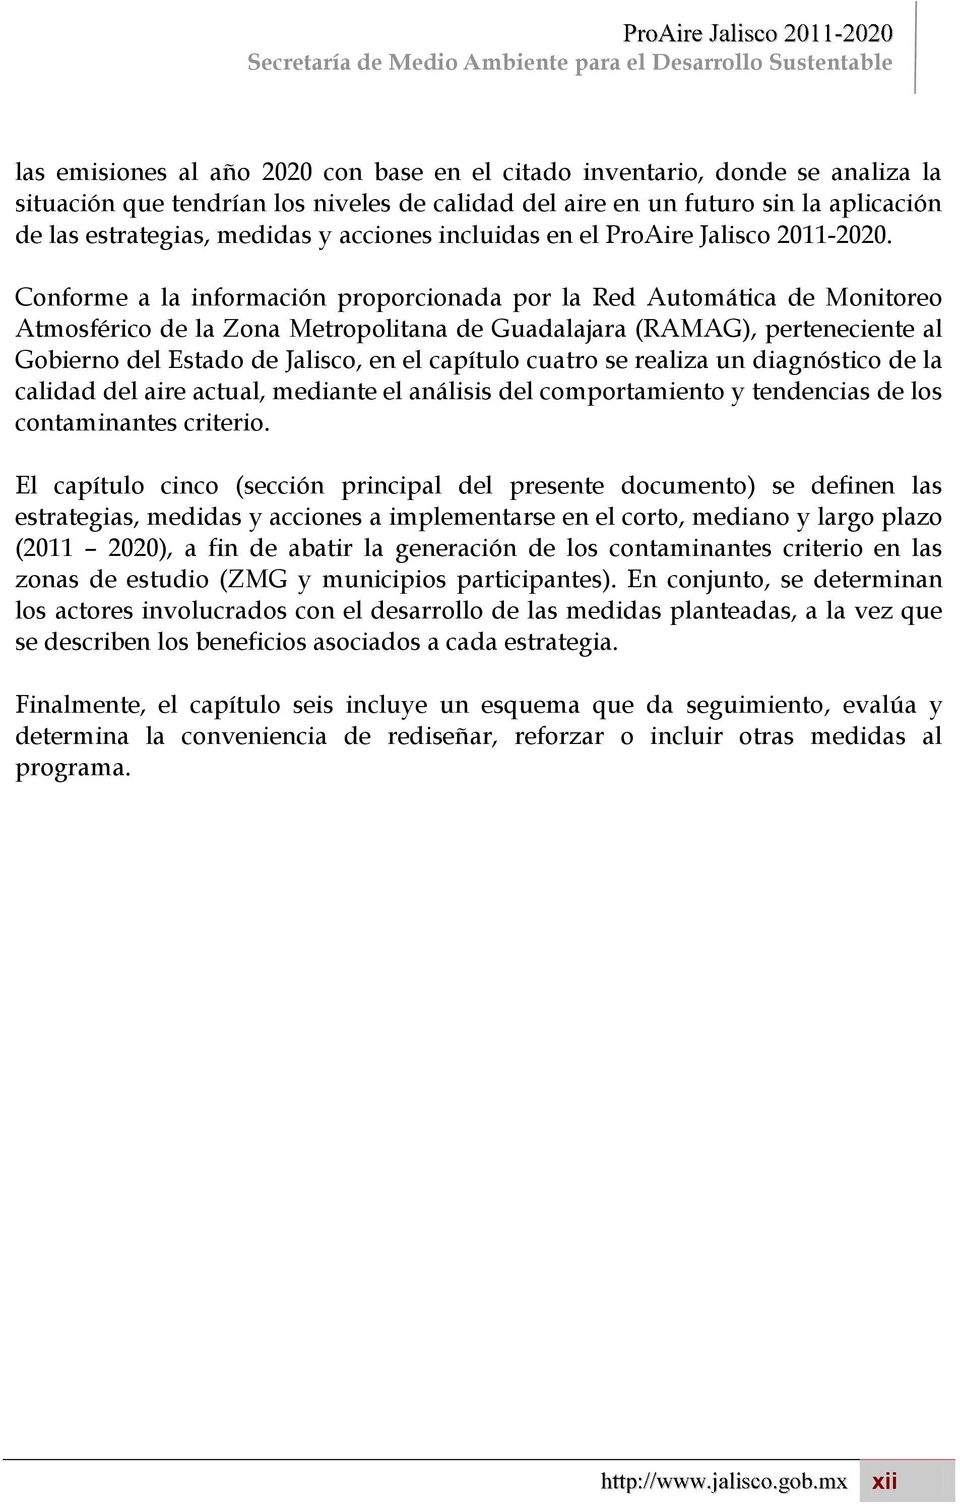 Conforme a la información proporcionada por la Red Automática de Monitoreo Atmosférico de la Zona Metropolitana de Guadalajara (RAMAG), perteneciente al Gobierno del Estado de Jalisco, en el capítulo